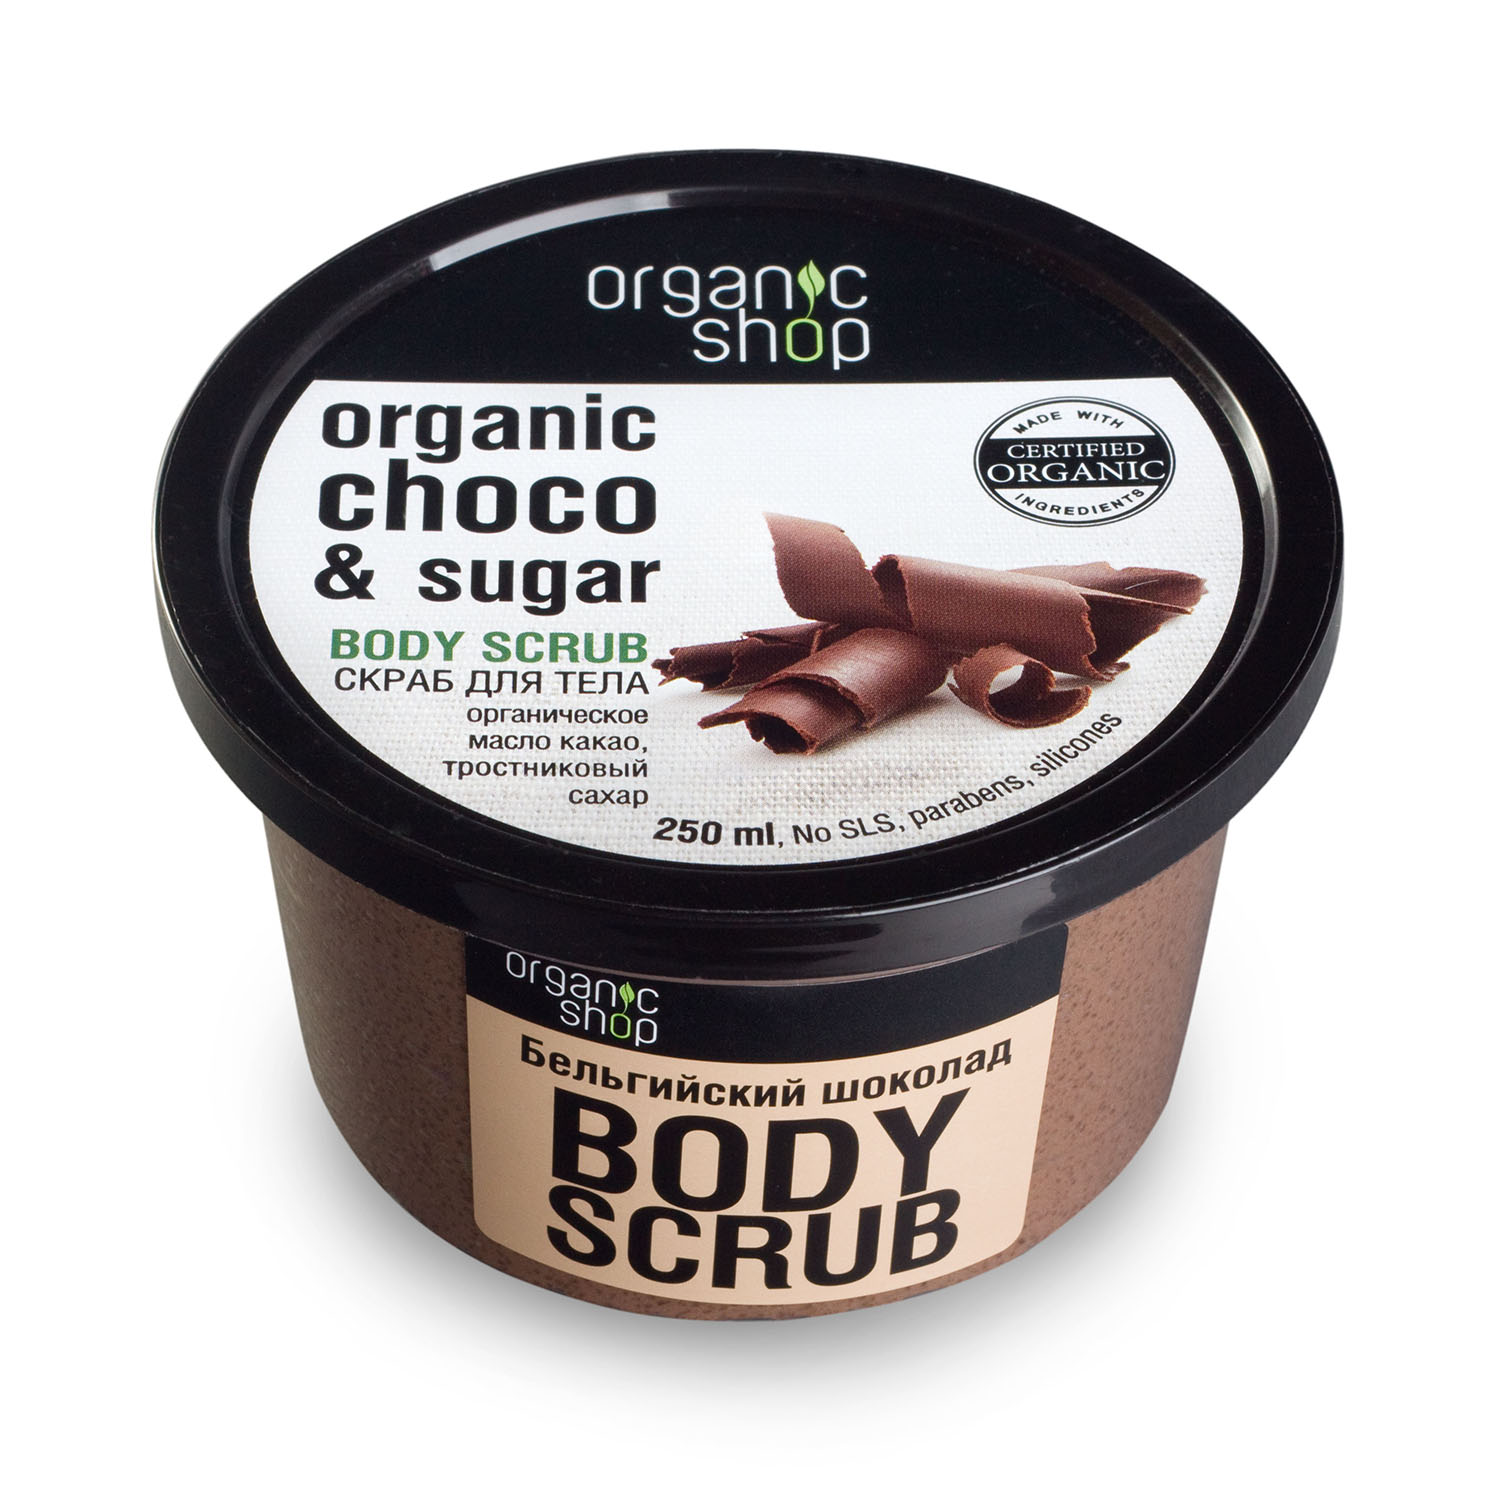 Organic Shop Скраб для тела Бельгийский шоколад, 250 мл (O